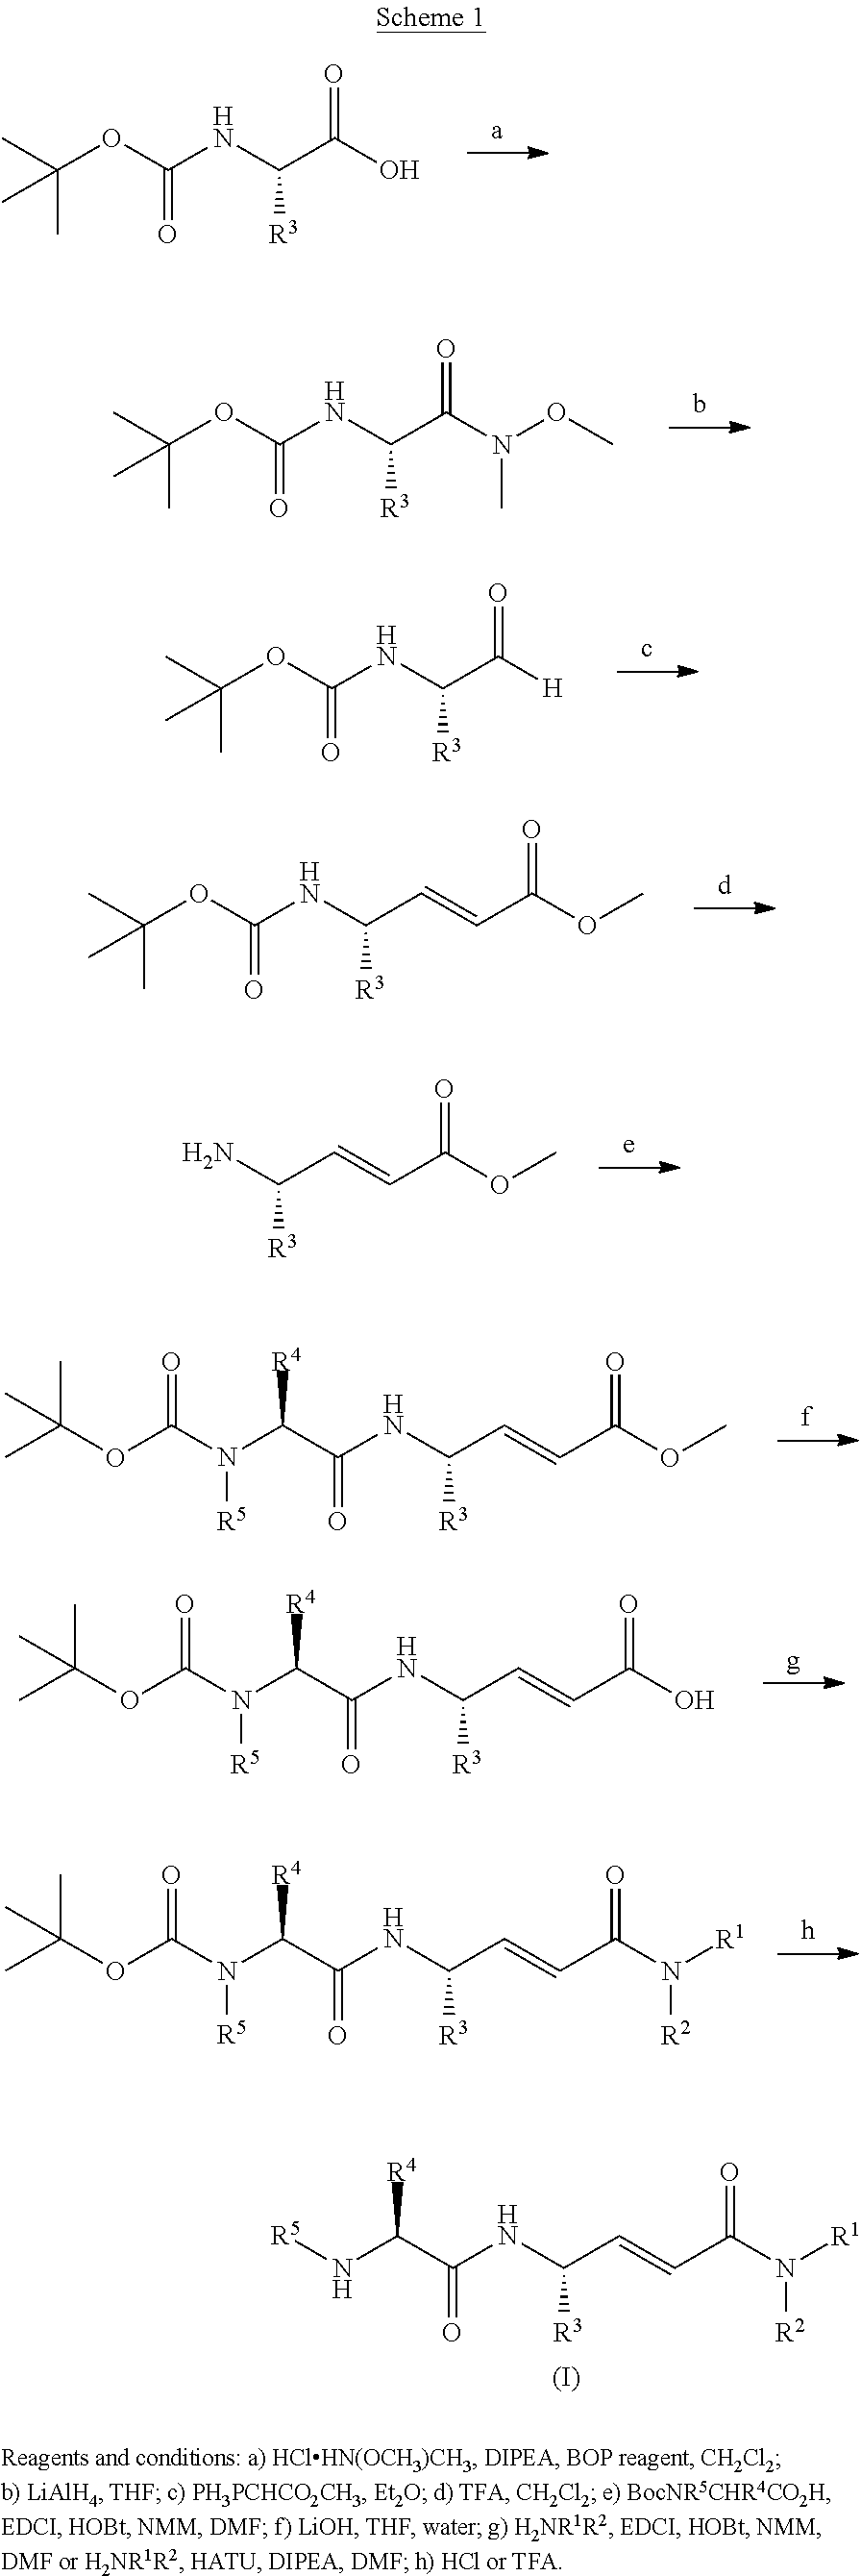 Cathepsin c inhibitors